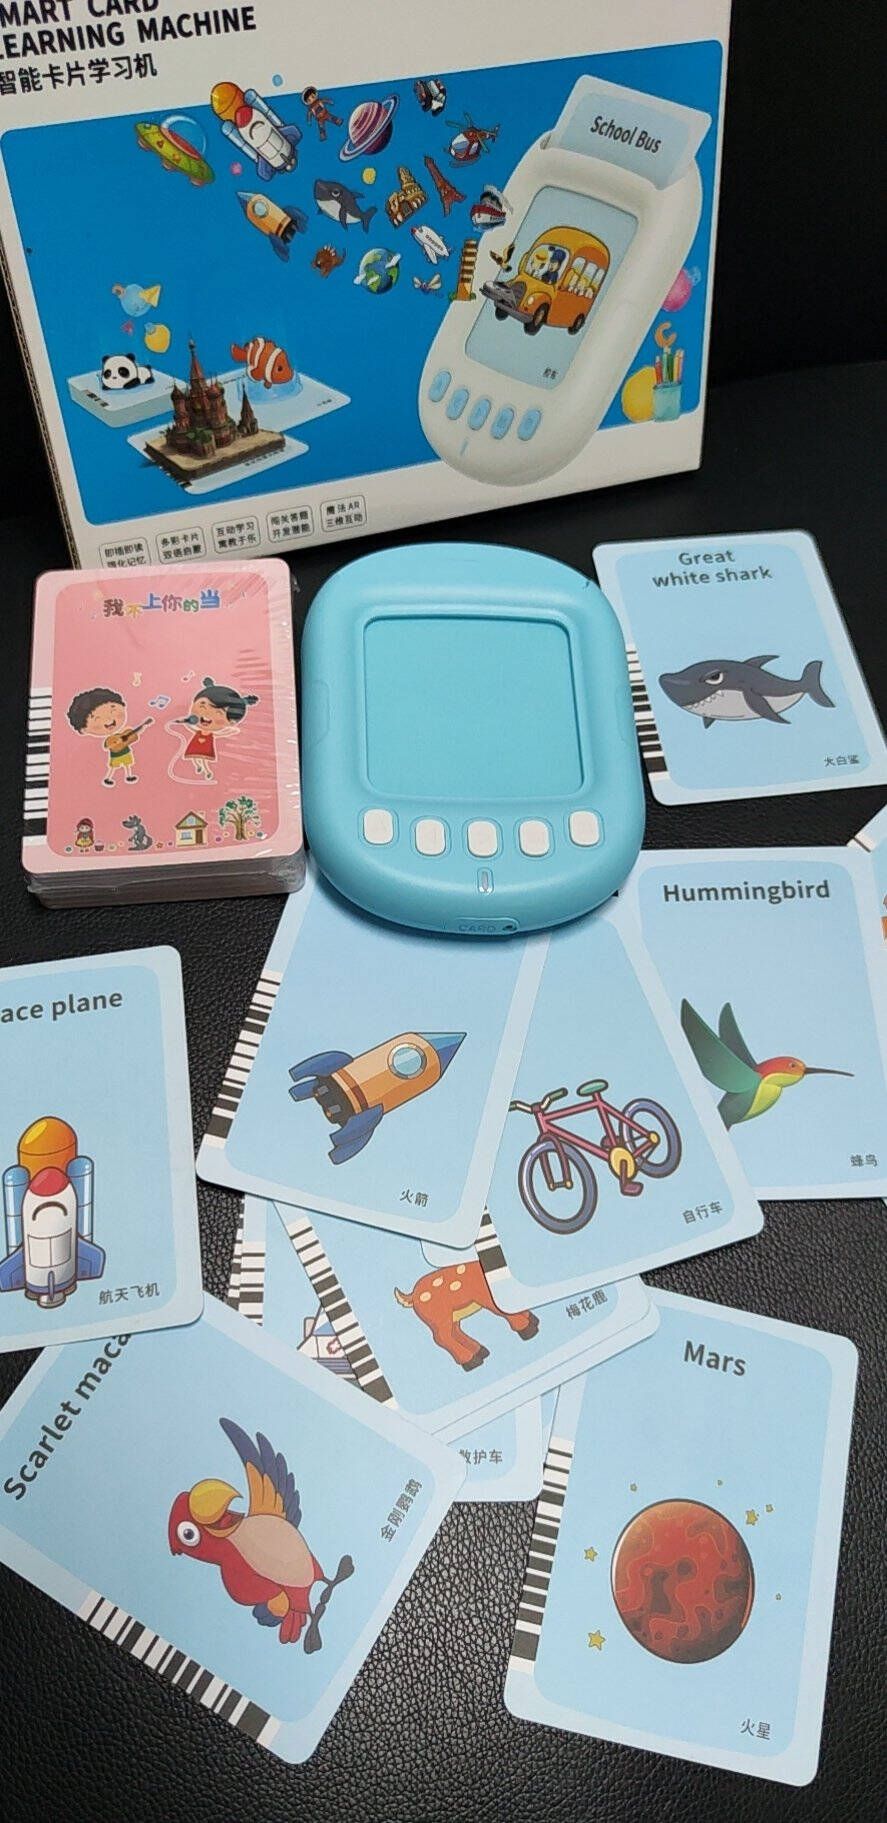 导爱儿童早教机婴儿单词拼音卡片学习机识字卡0-3岁宝宝英语识字启蒙益智玩具男孩女孩生日礼物粉红色